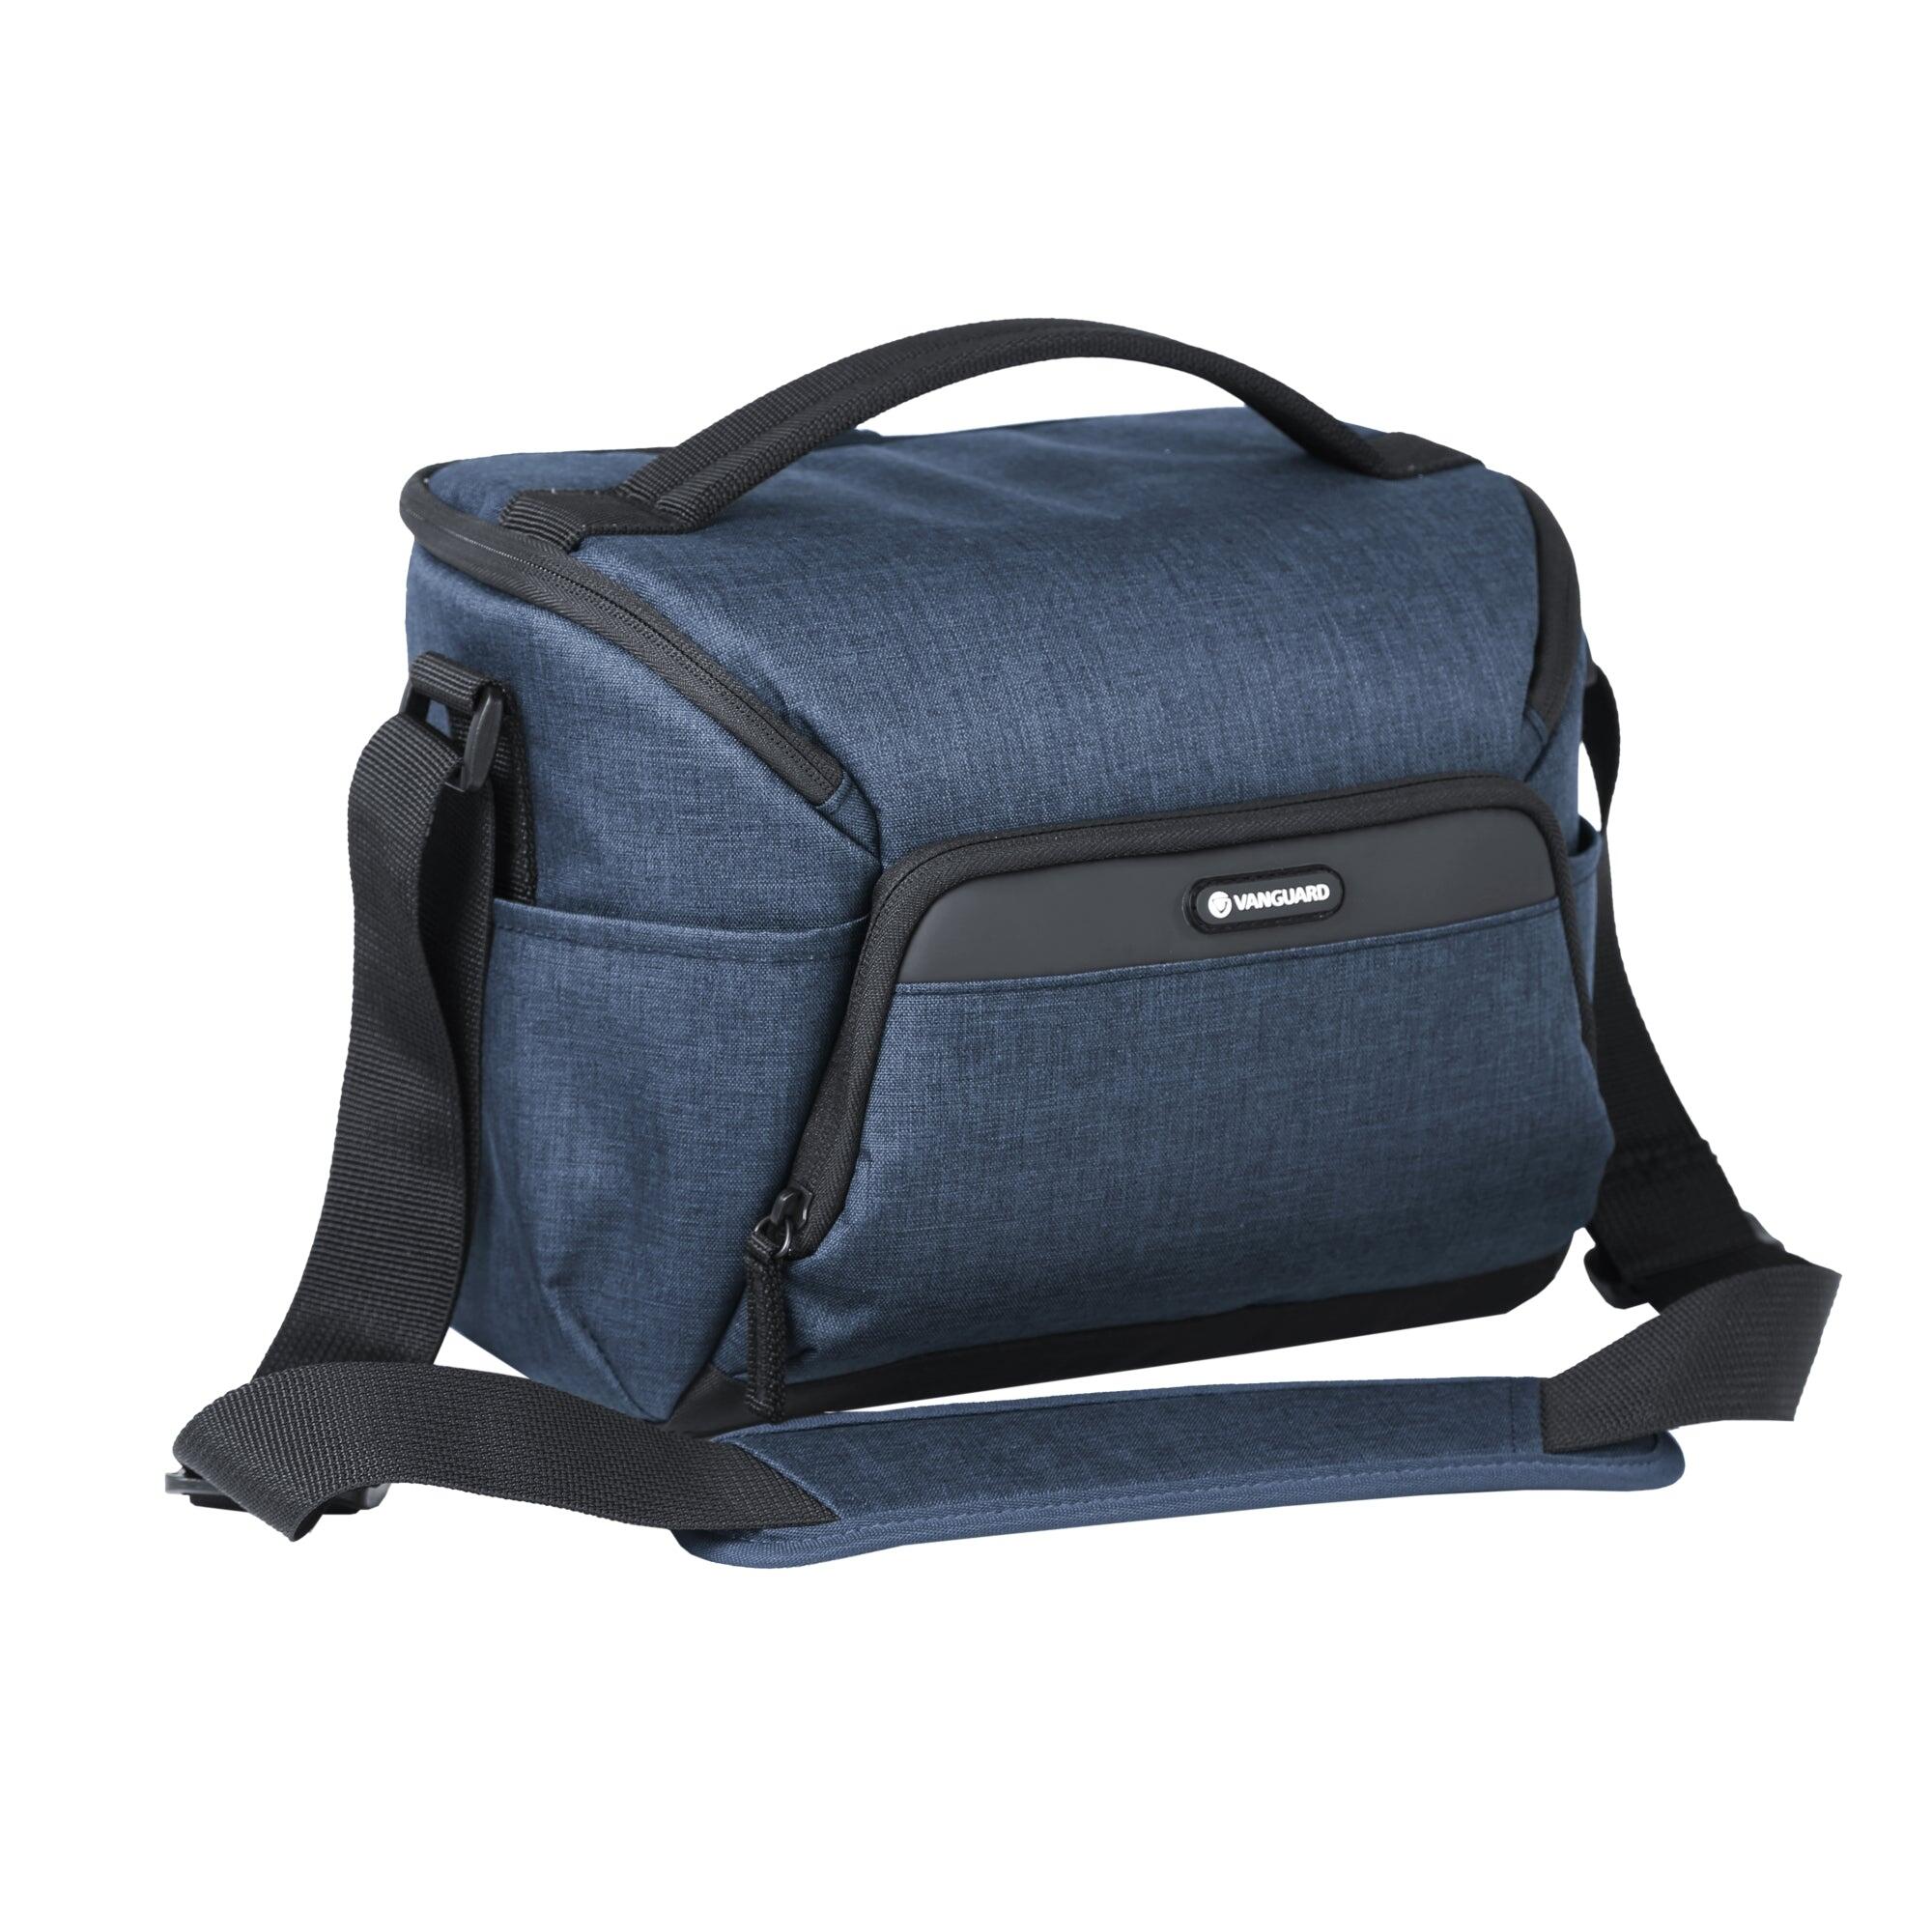 VESTA Aspire 25 NV Shoulder Bag - Blue 2/5